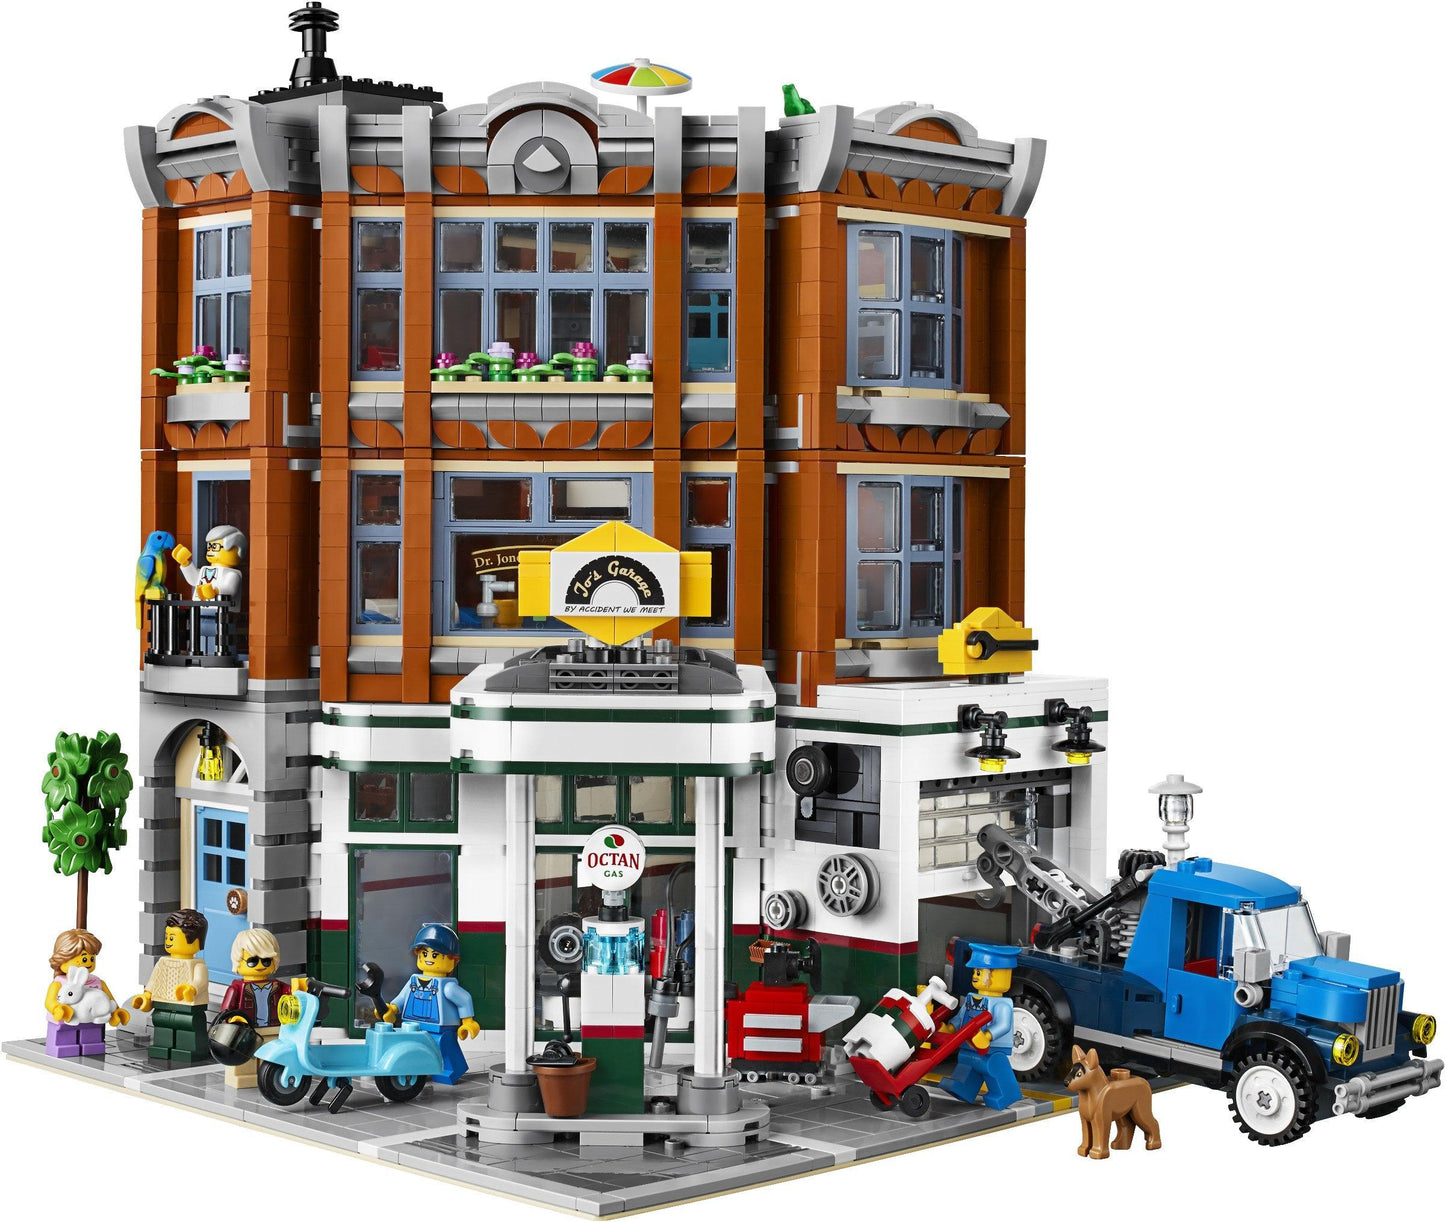 LEGO Corner Garage werkplaats 10264 Creator Expert LEGO CREATOR EXPERT MODULAIR @ 2TTOYS LEGO €. 274.99